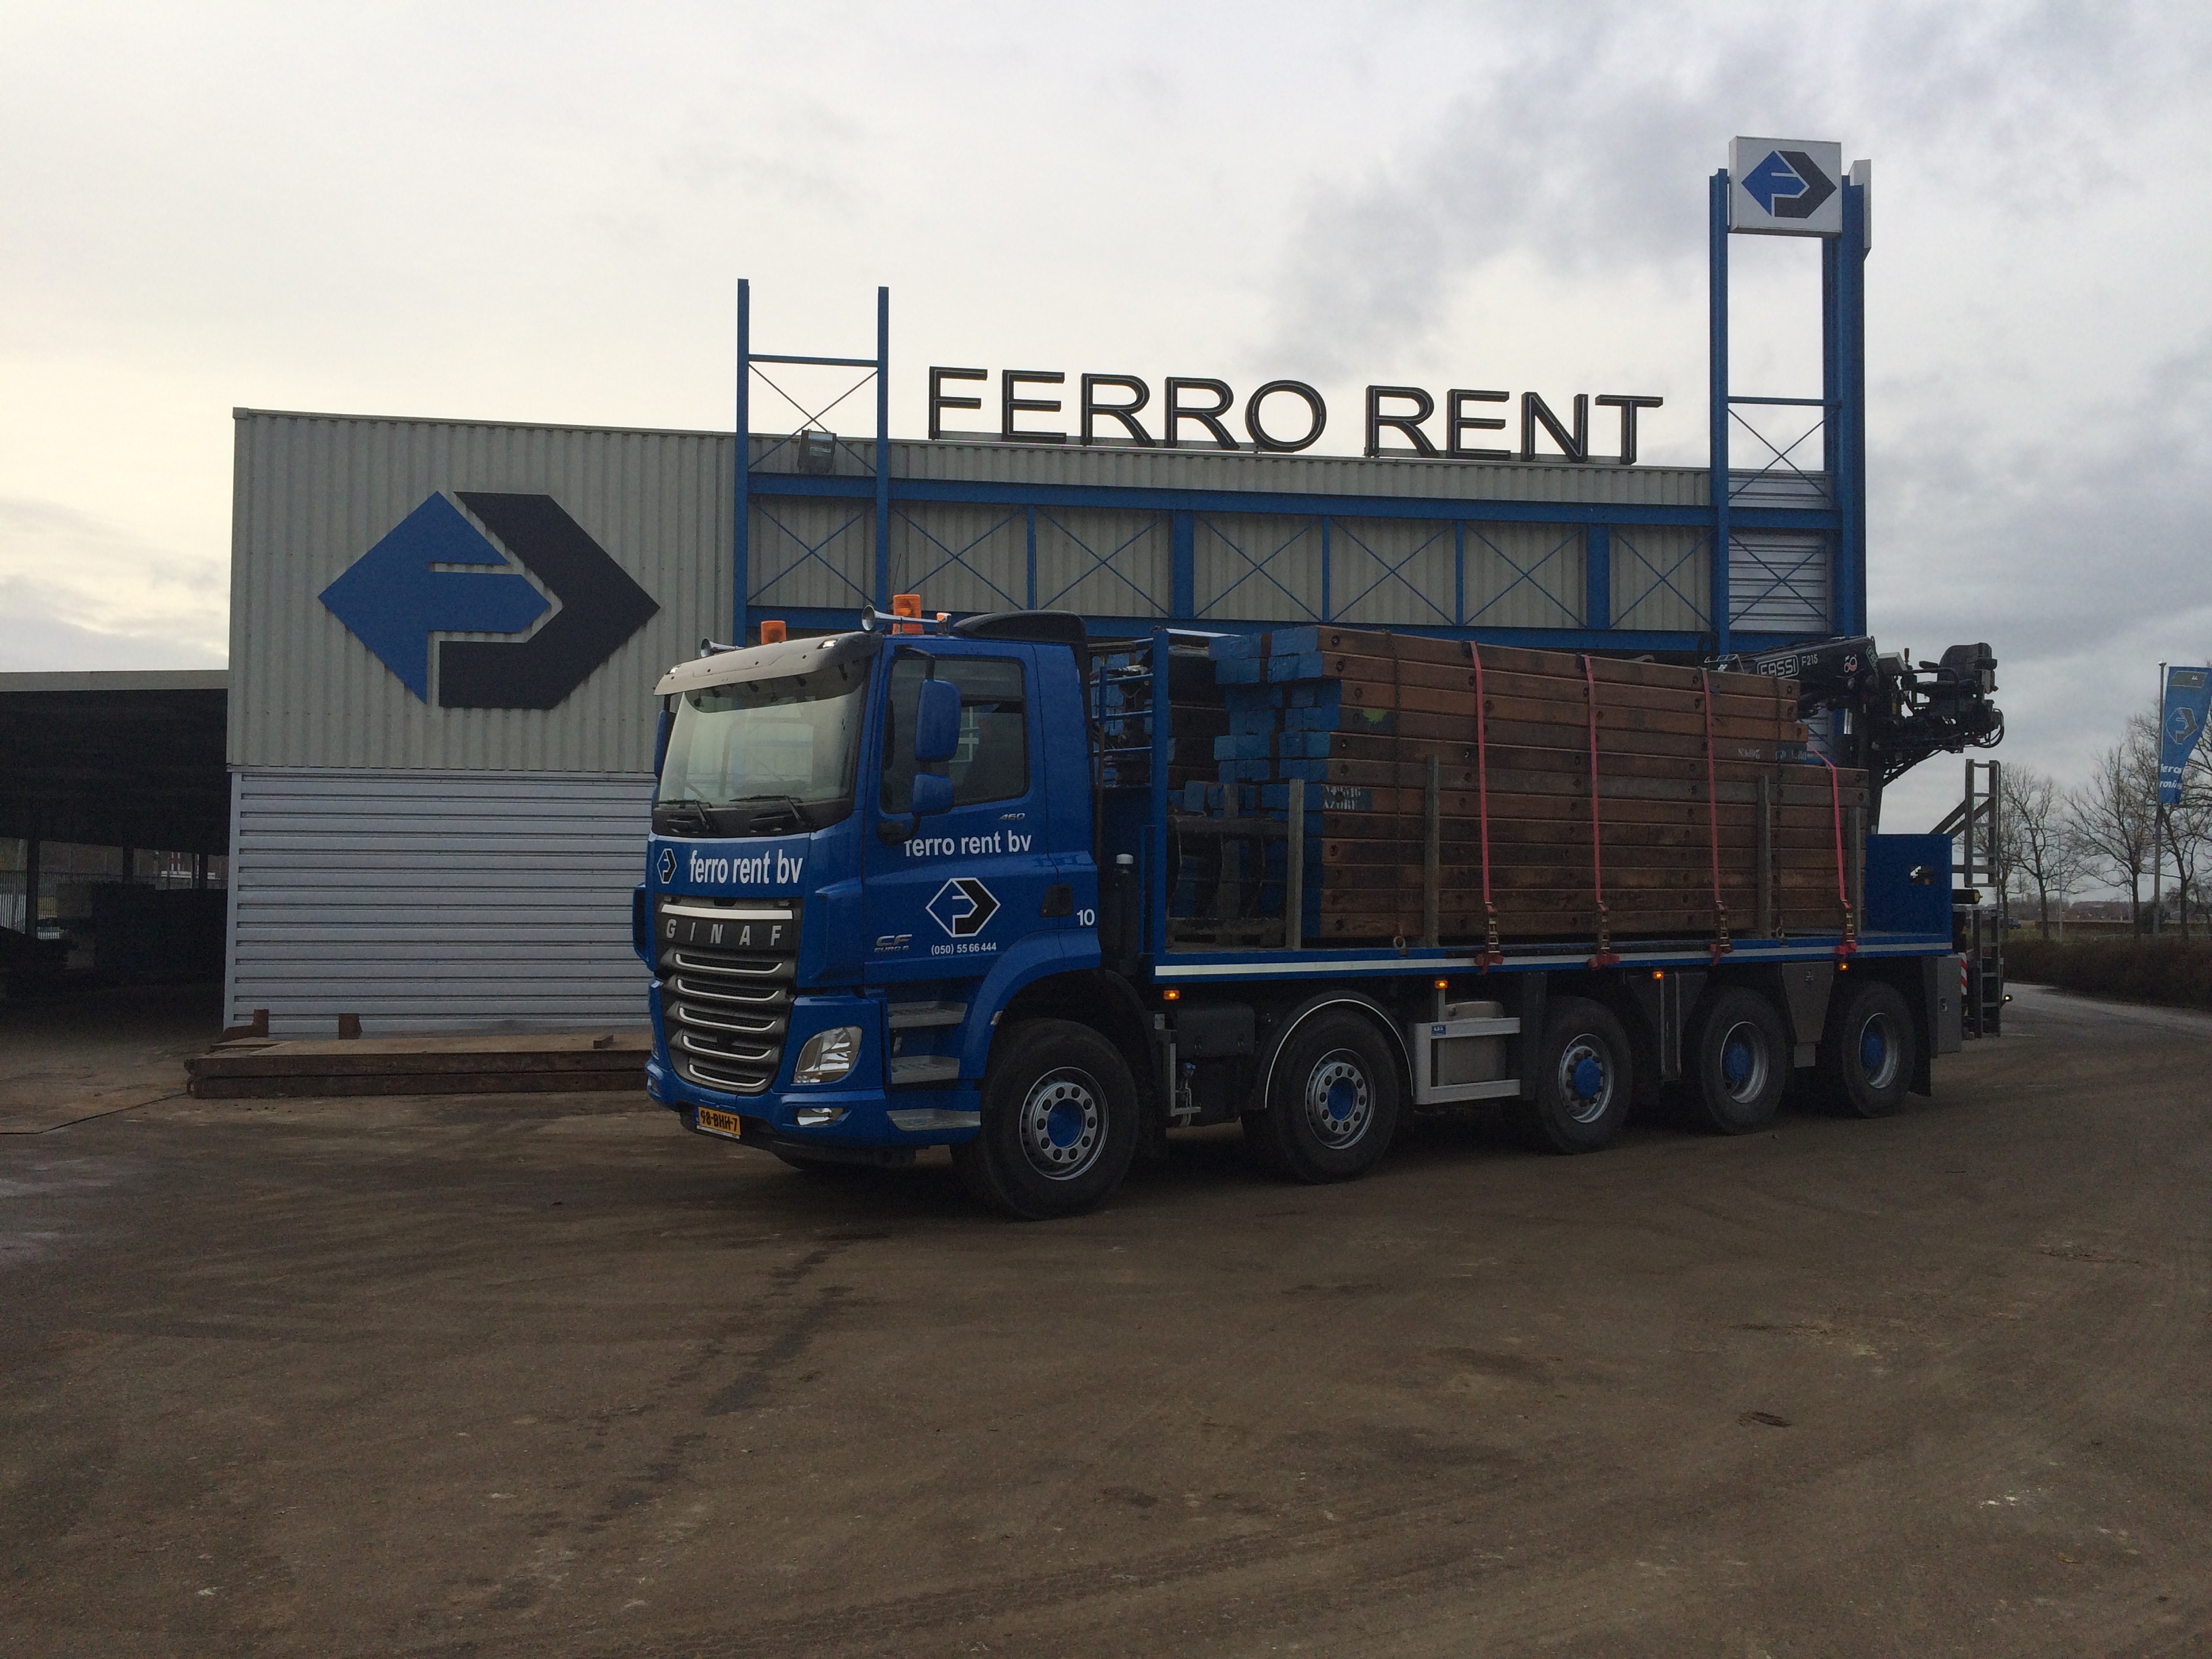 Ferro Rent kan vervoer van materiaal voor u verzorgen